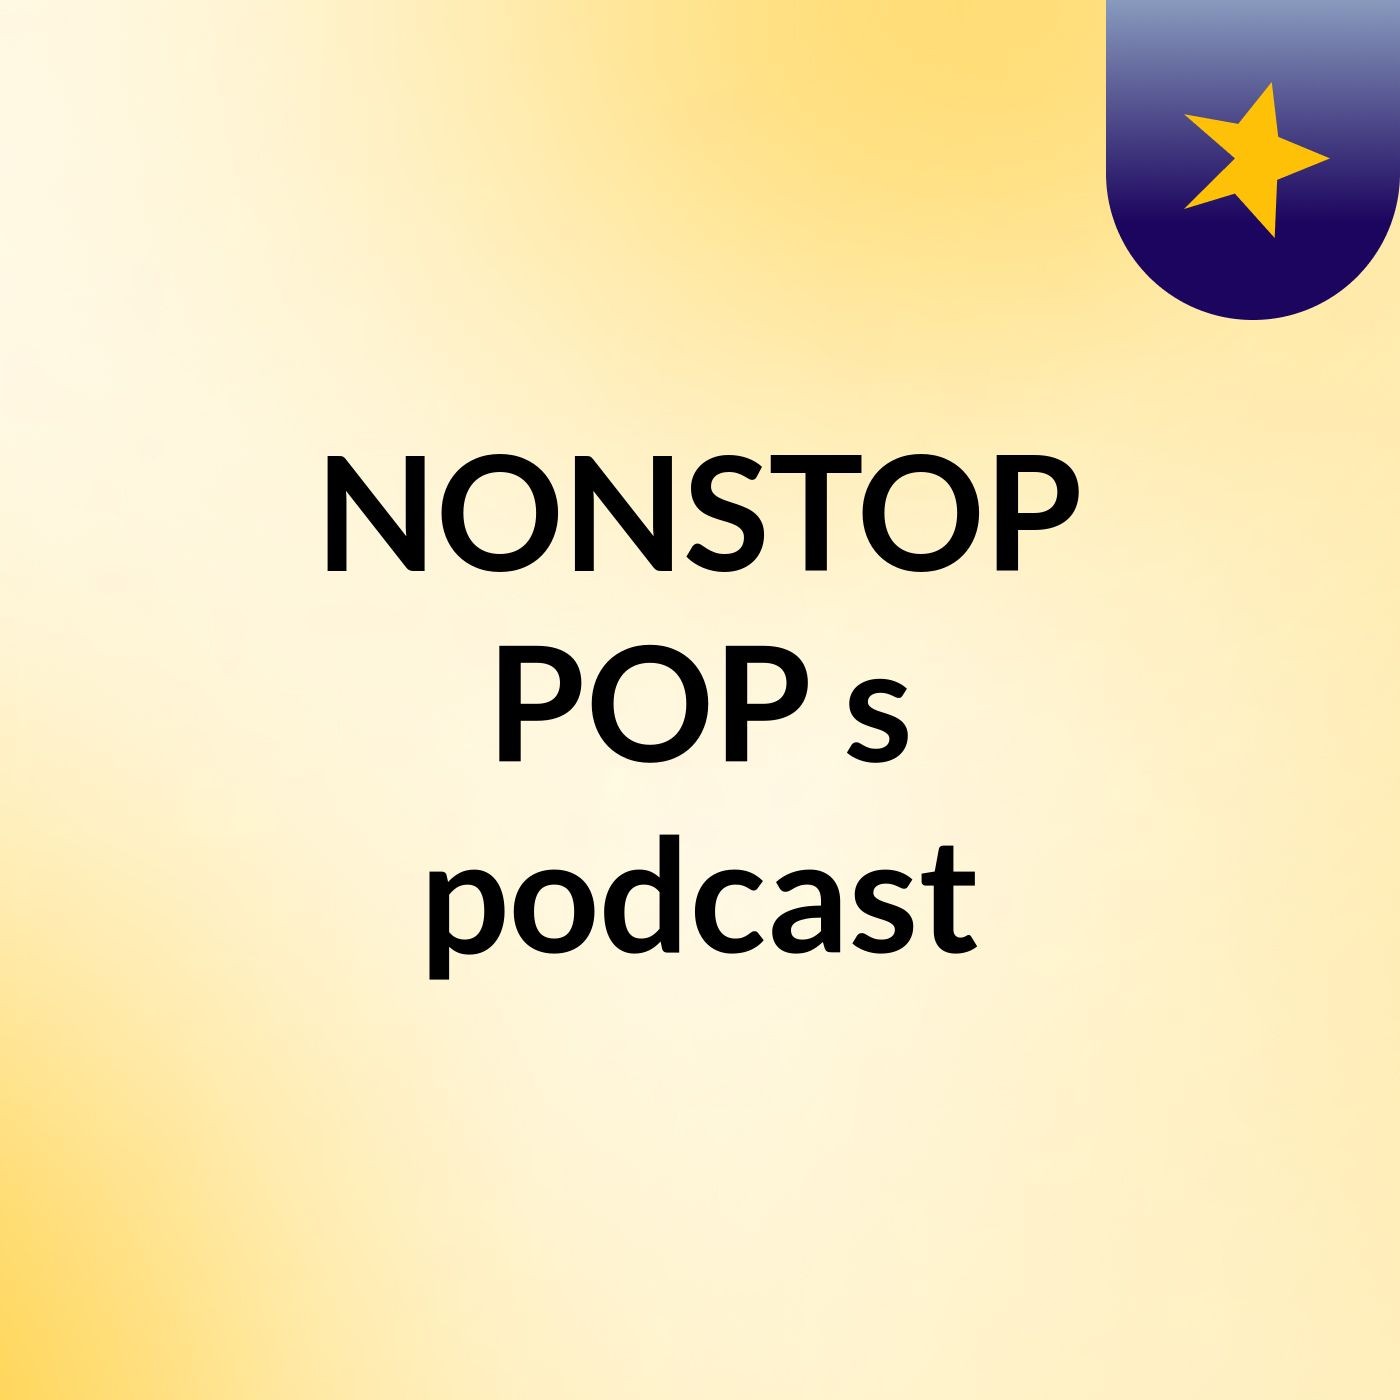 Episode 2 - NONSTOP POP's podcast